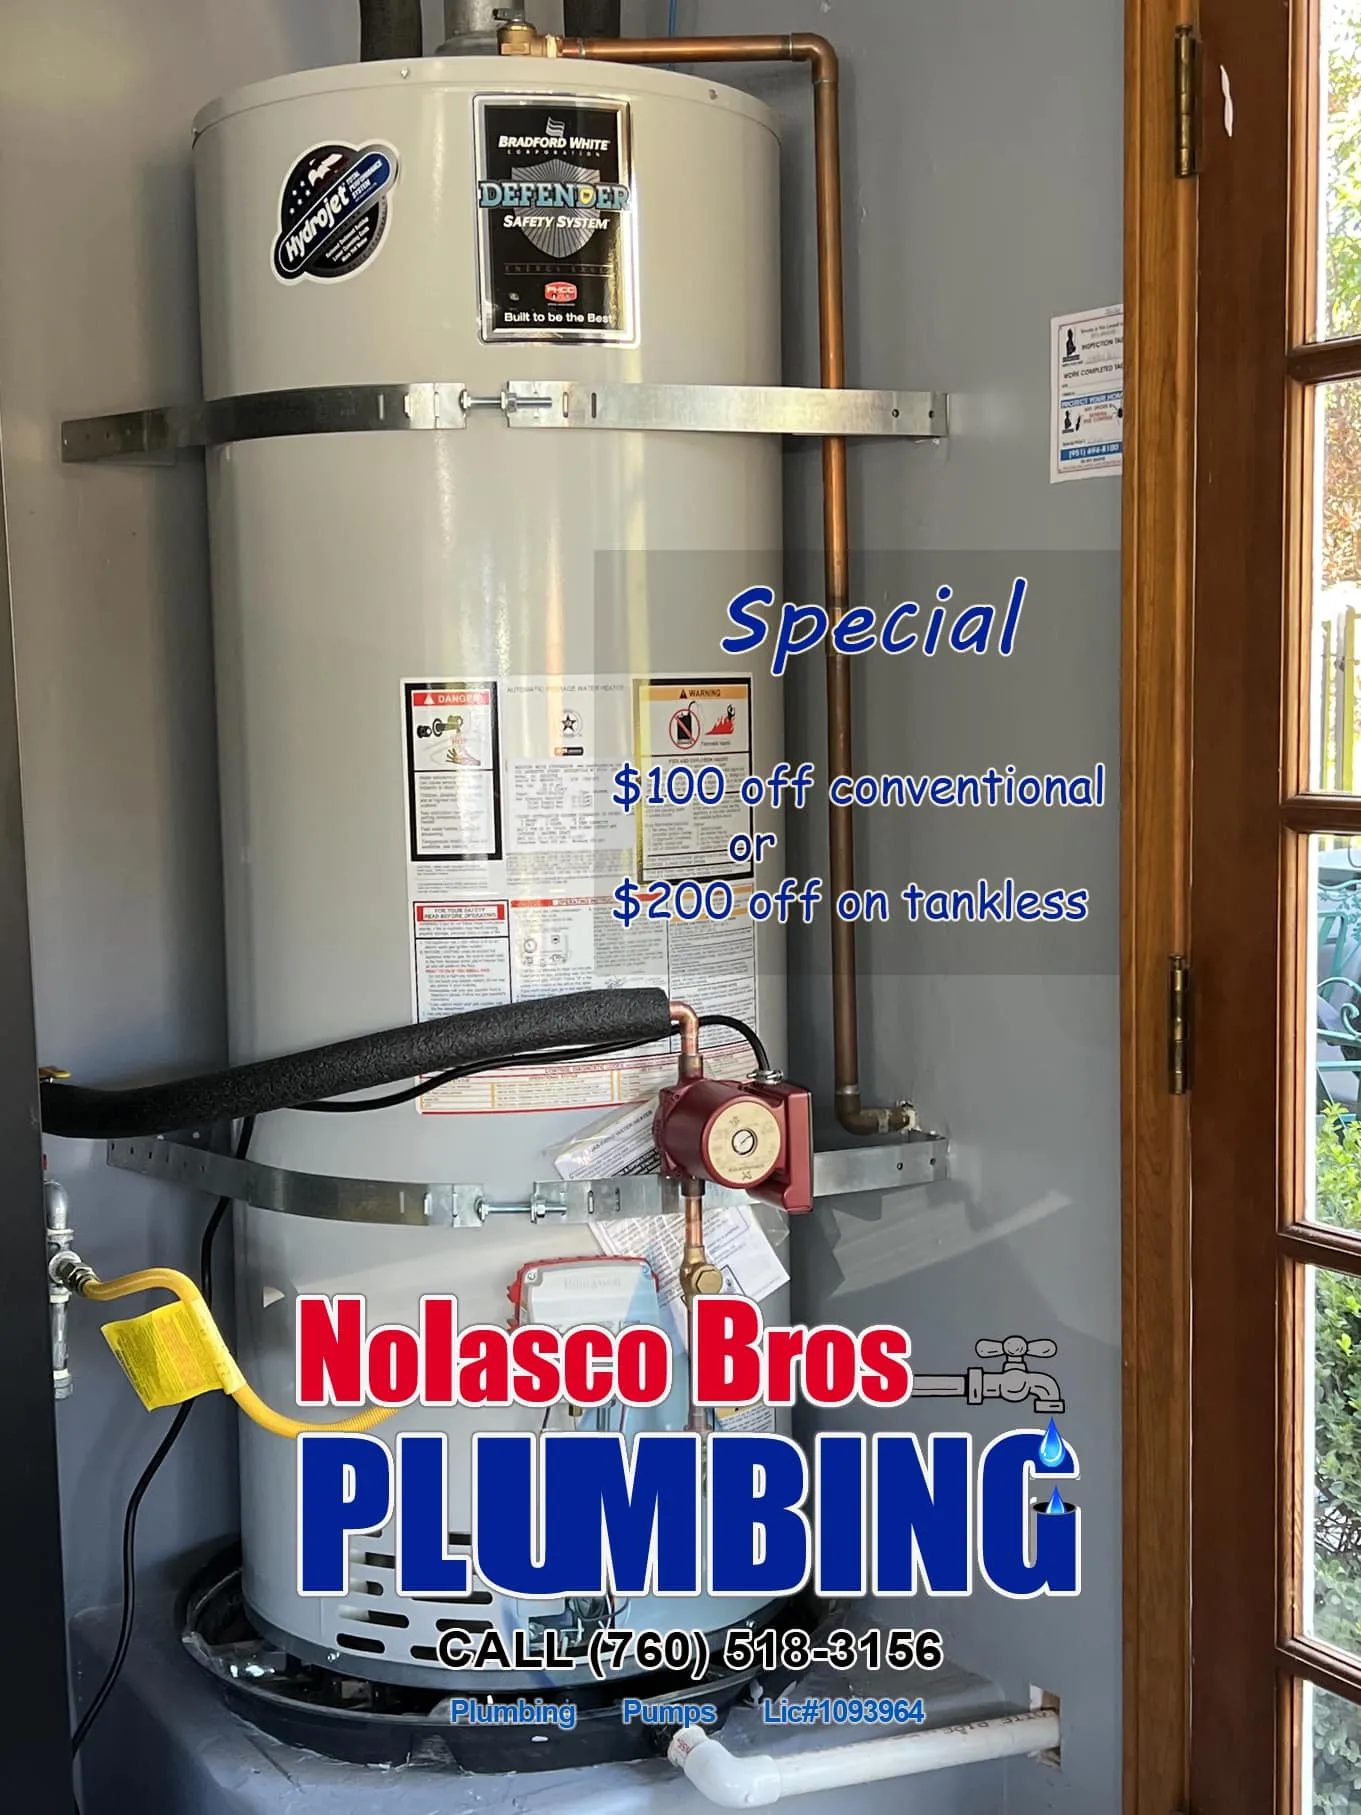 Commercial Plumbing for Nolasco Bros Plumbing in Murrieta, CA